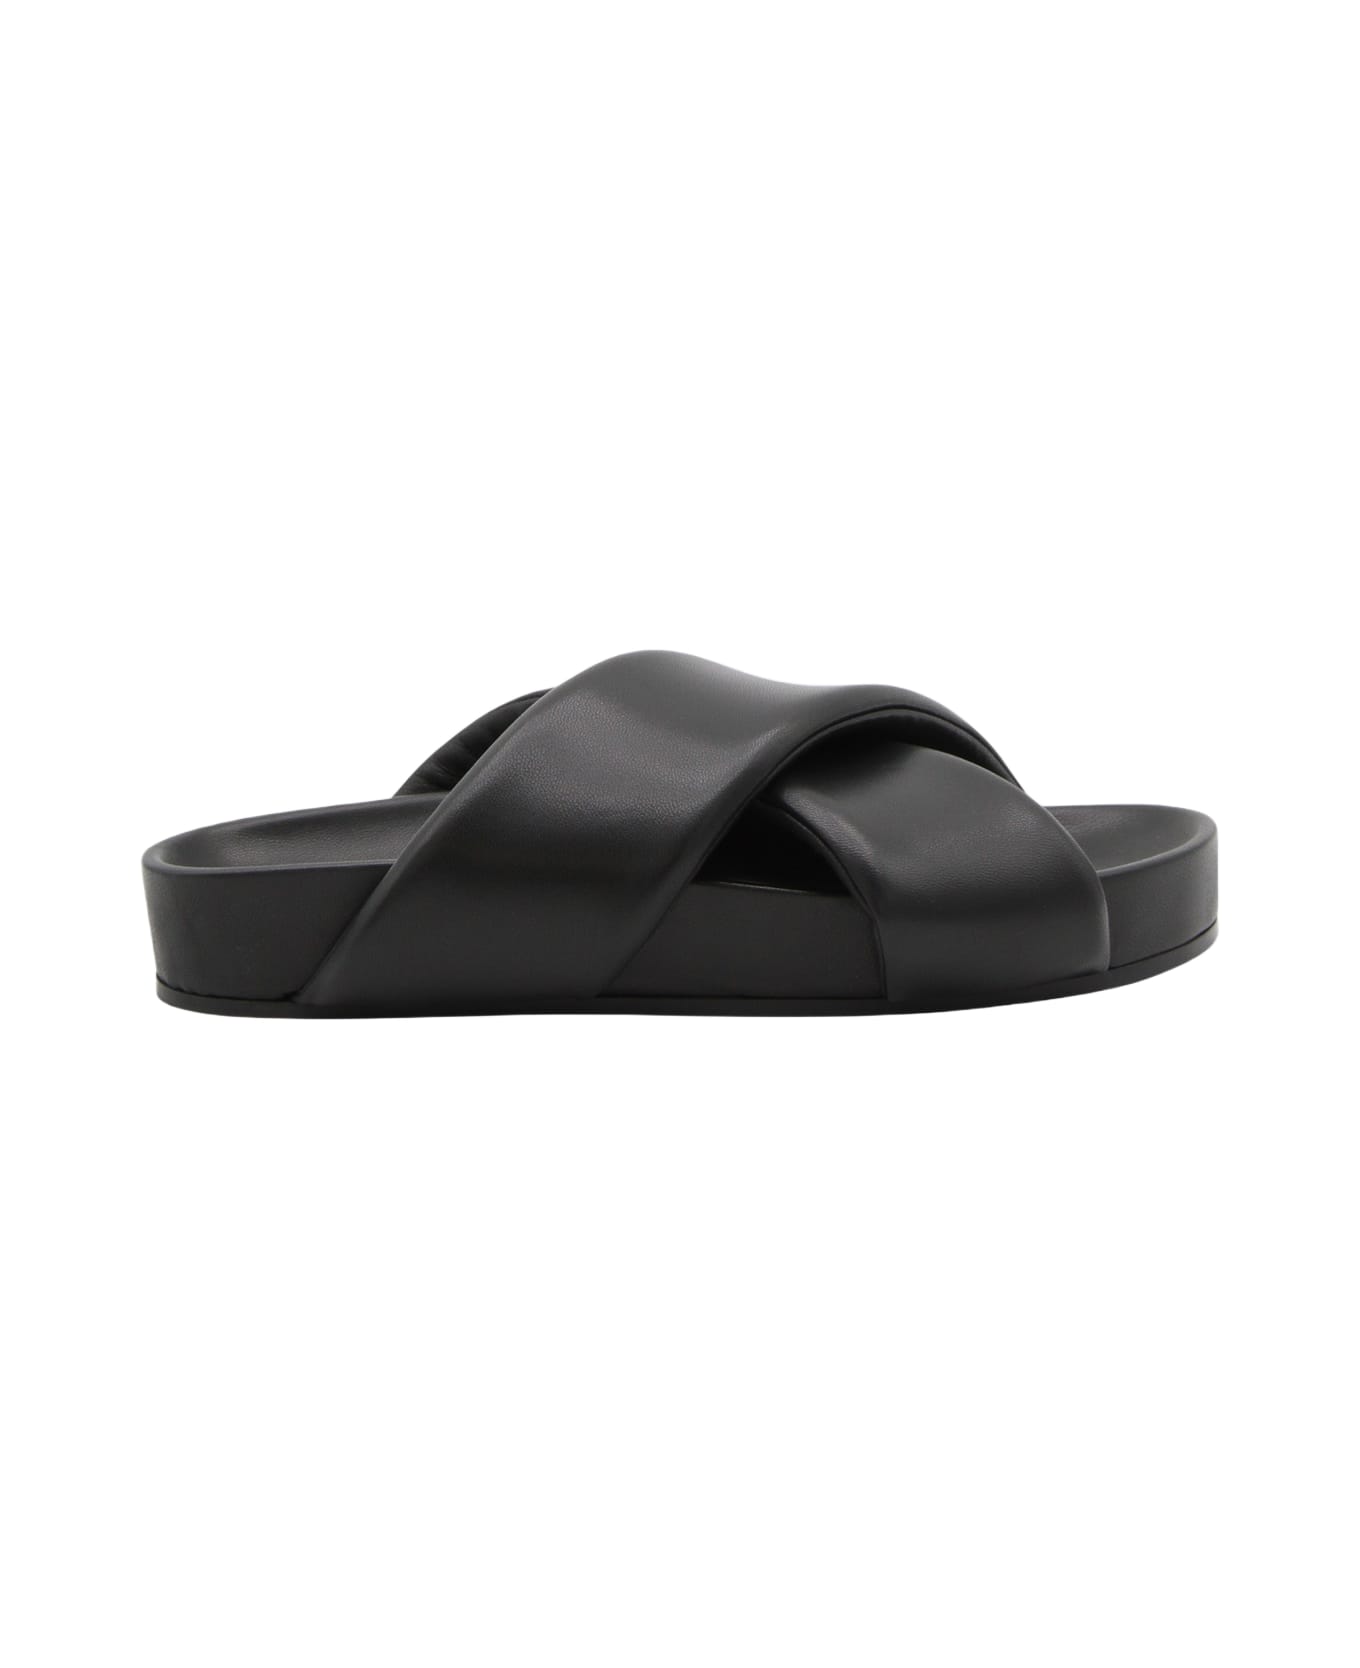 Jil Sander Black Leather Padded Sandals - Black